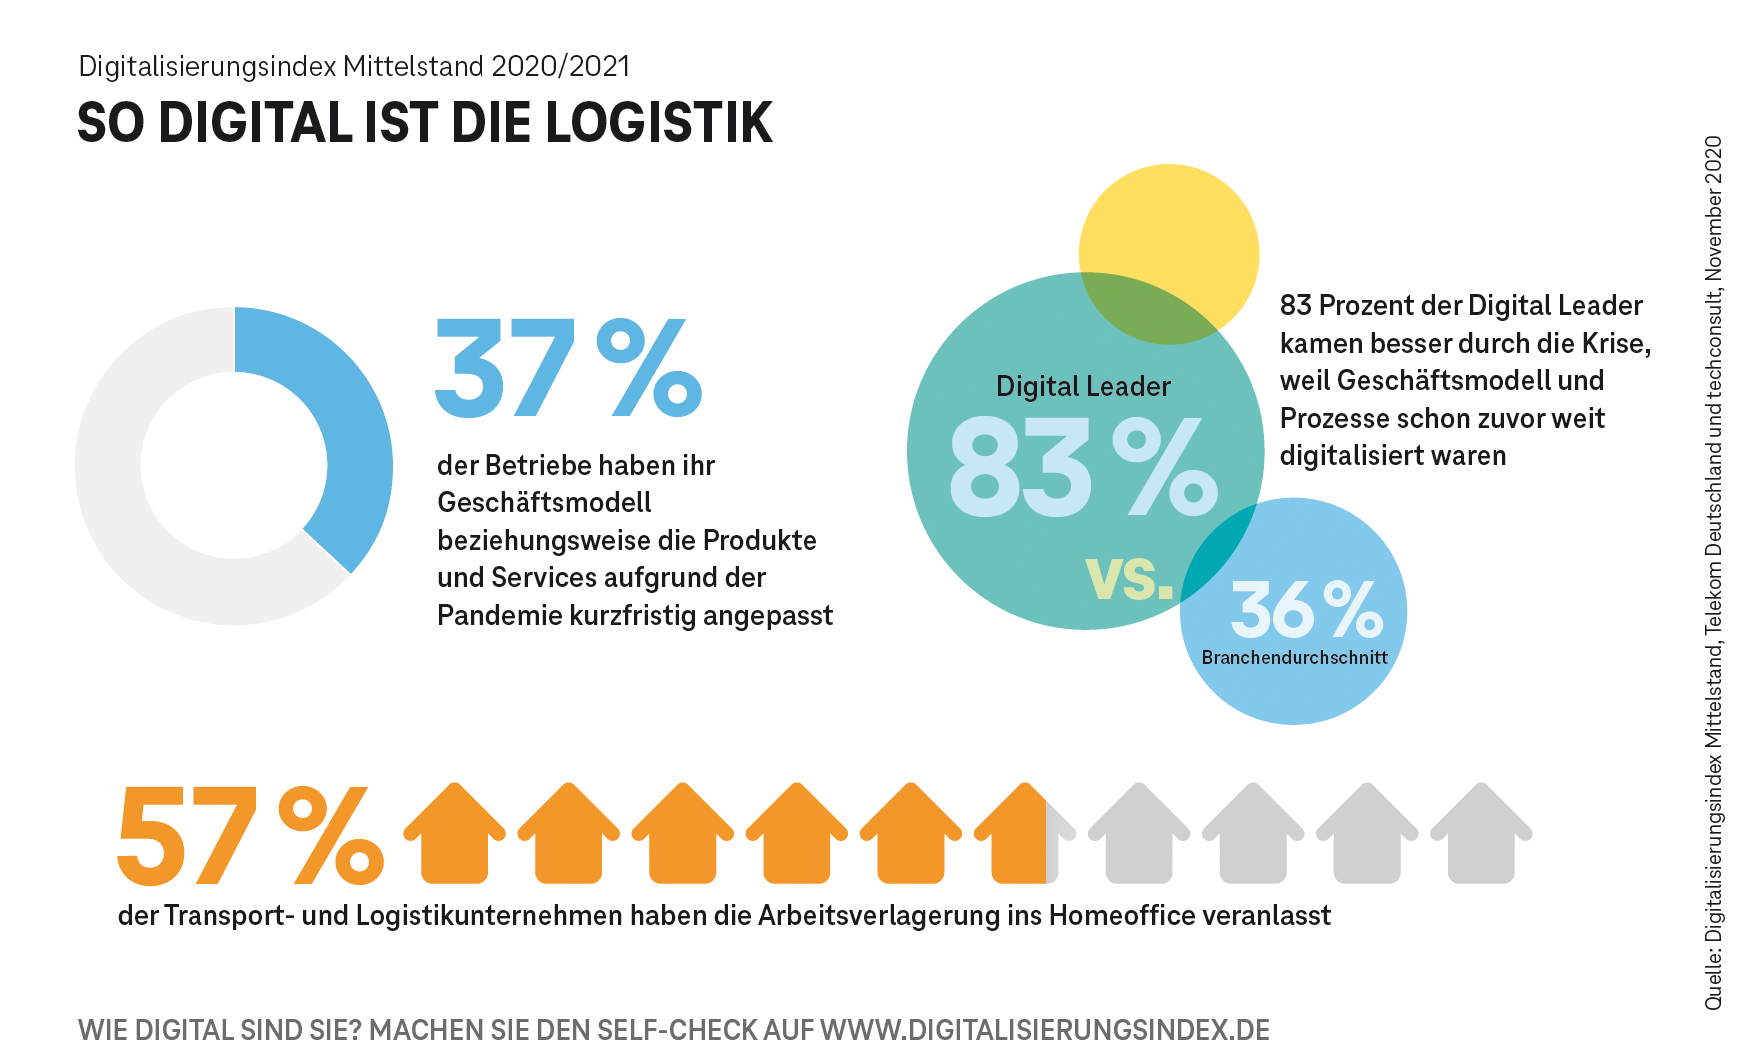 Digitale Logistik: Mit smarten Lieferketten der Krise trotzen